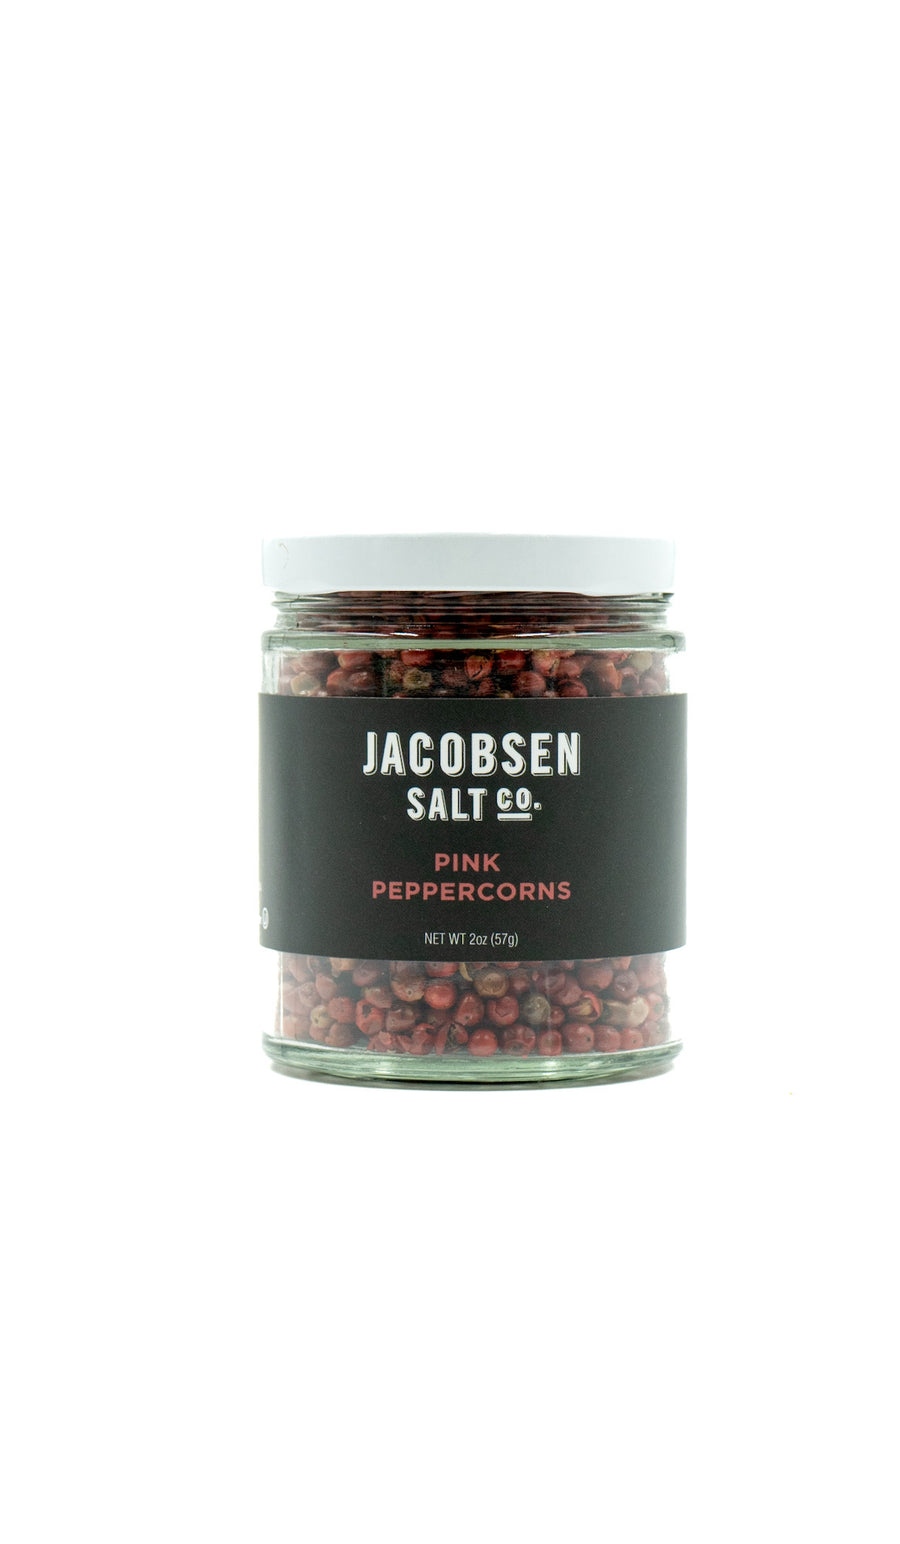 Pink Peppercorn Jar by Jacobsen Salt Co.